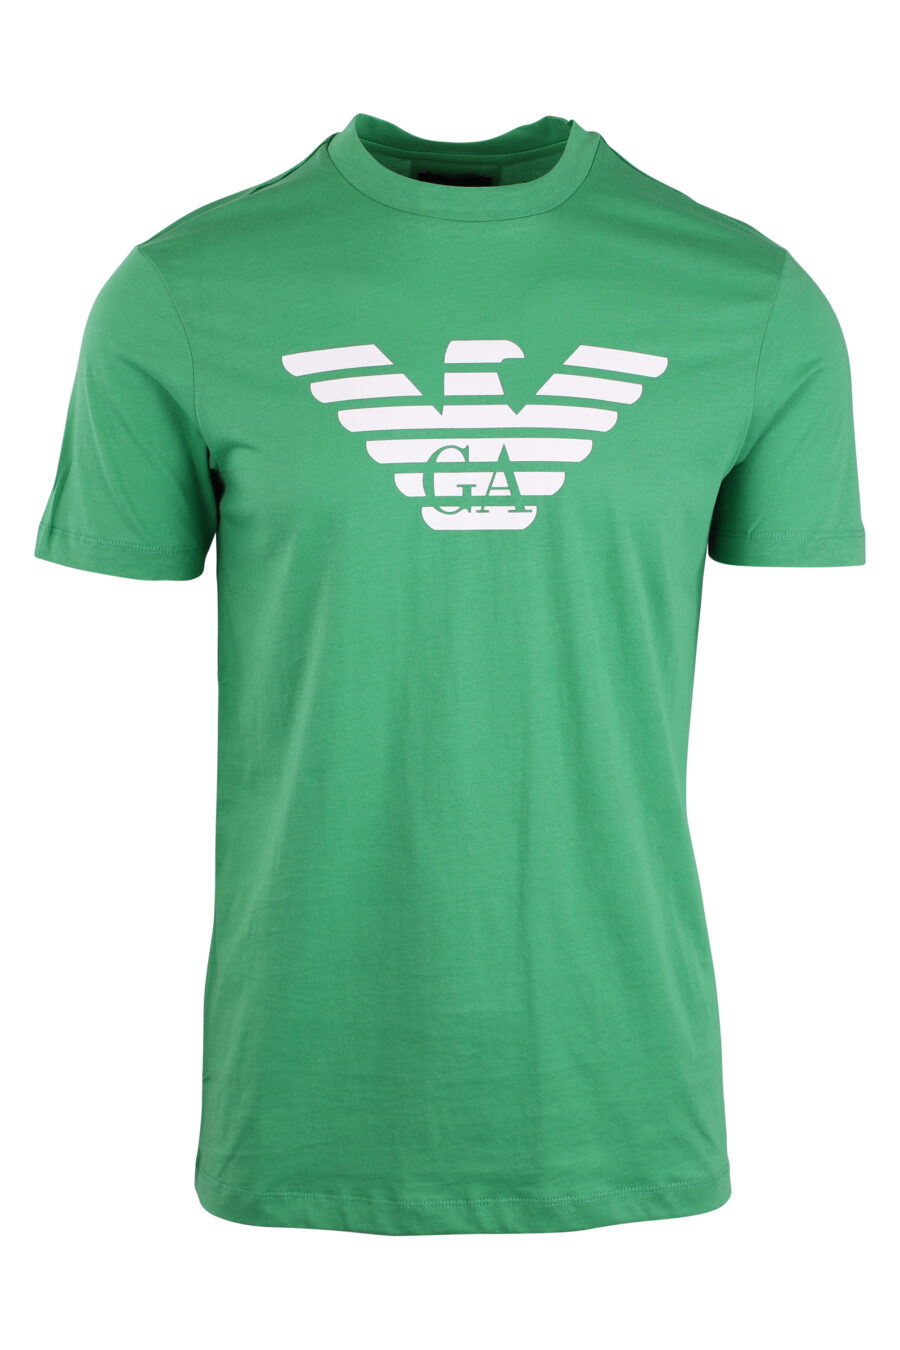 T-shirt verde com o logótipo da águia - IMG 4329